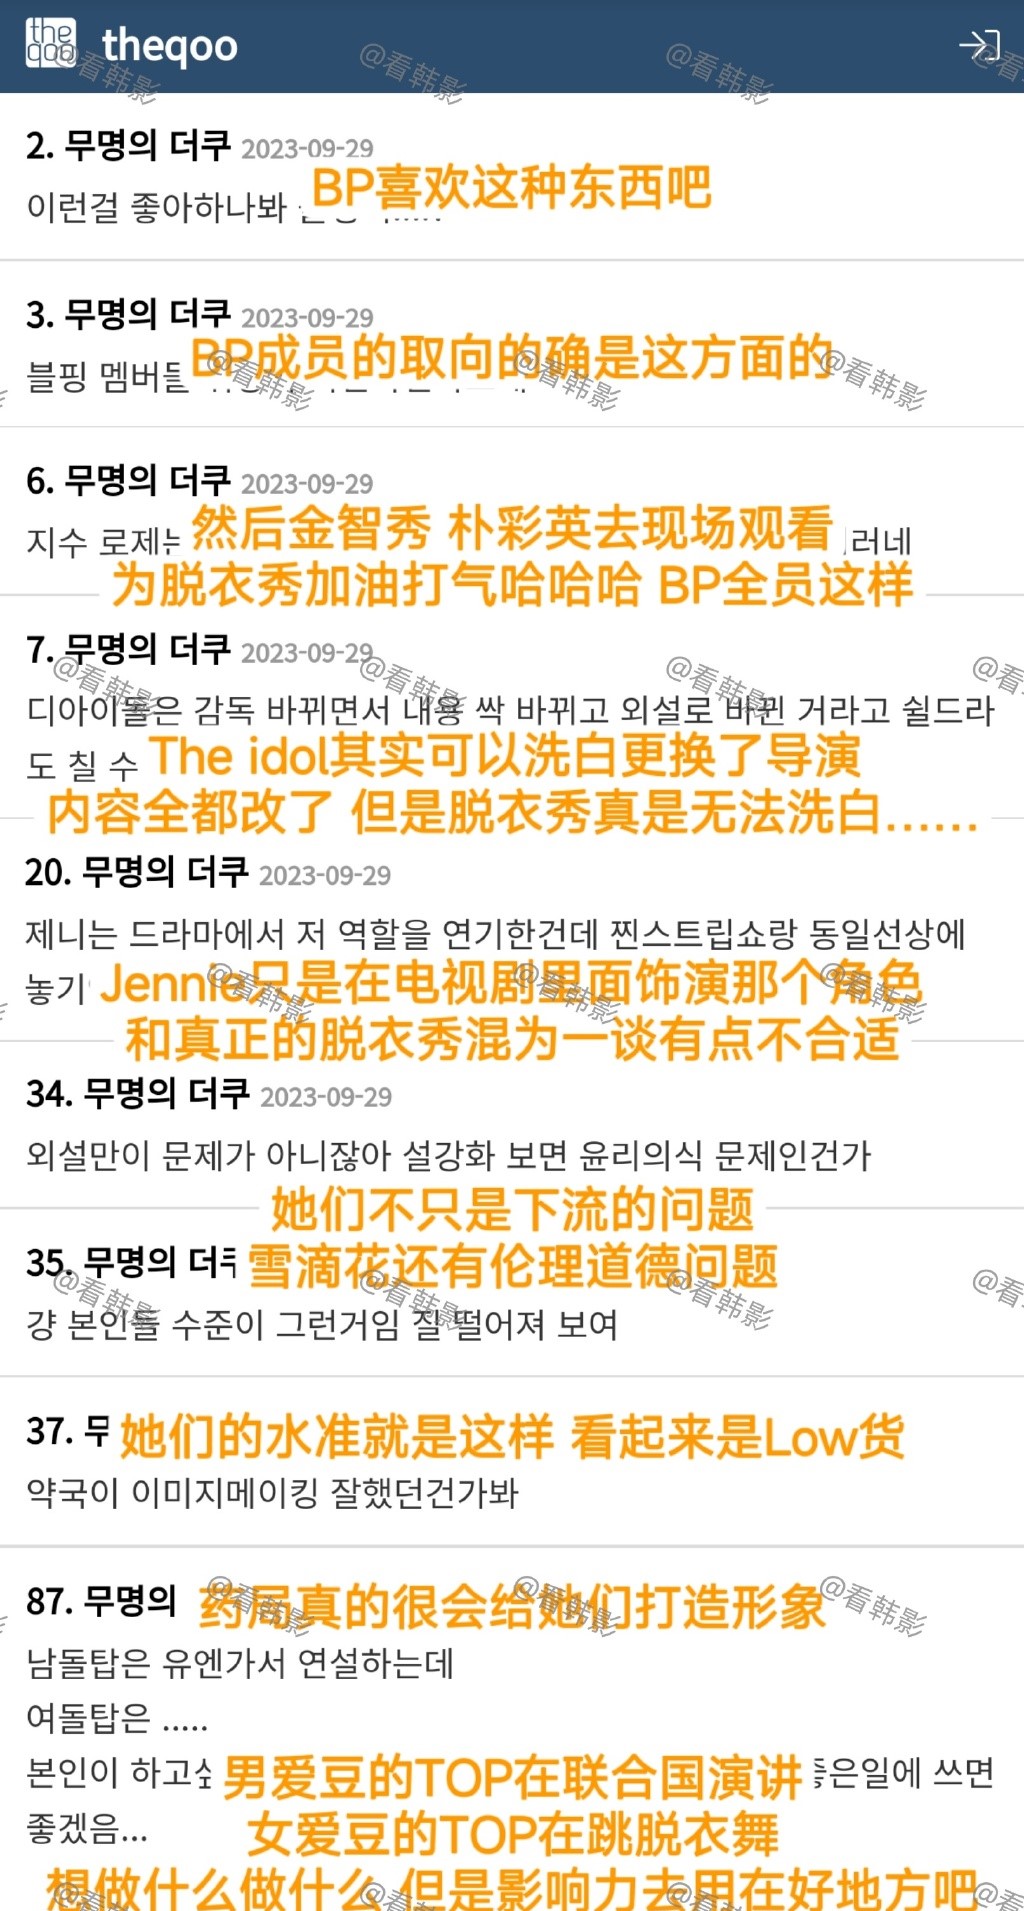 另外亦有韩国网民指BLACKPINK全体成员有道德问题。